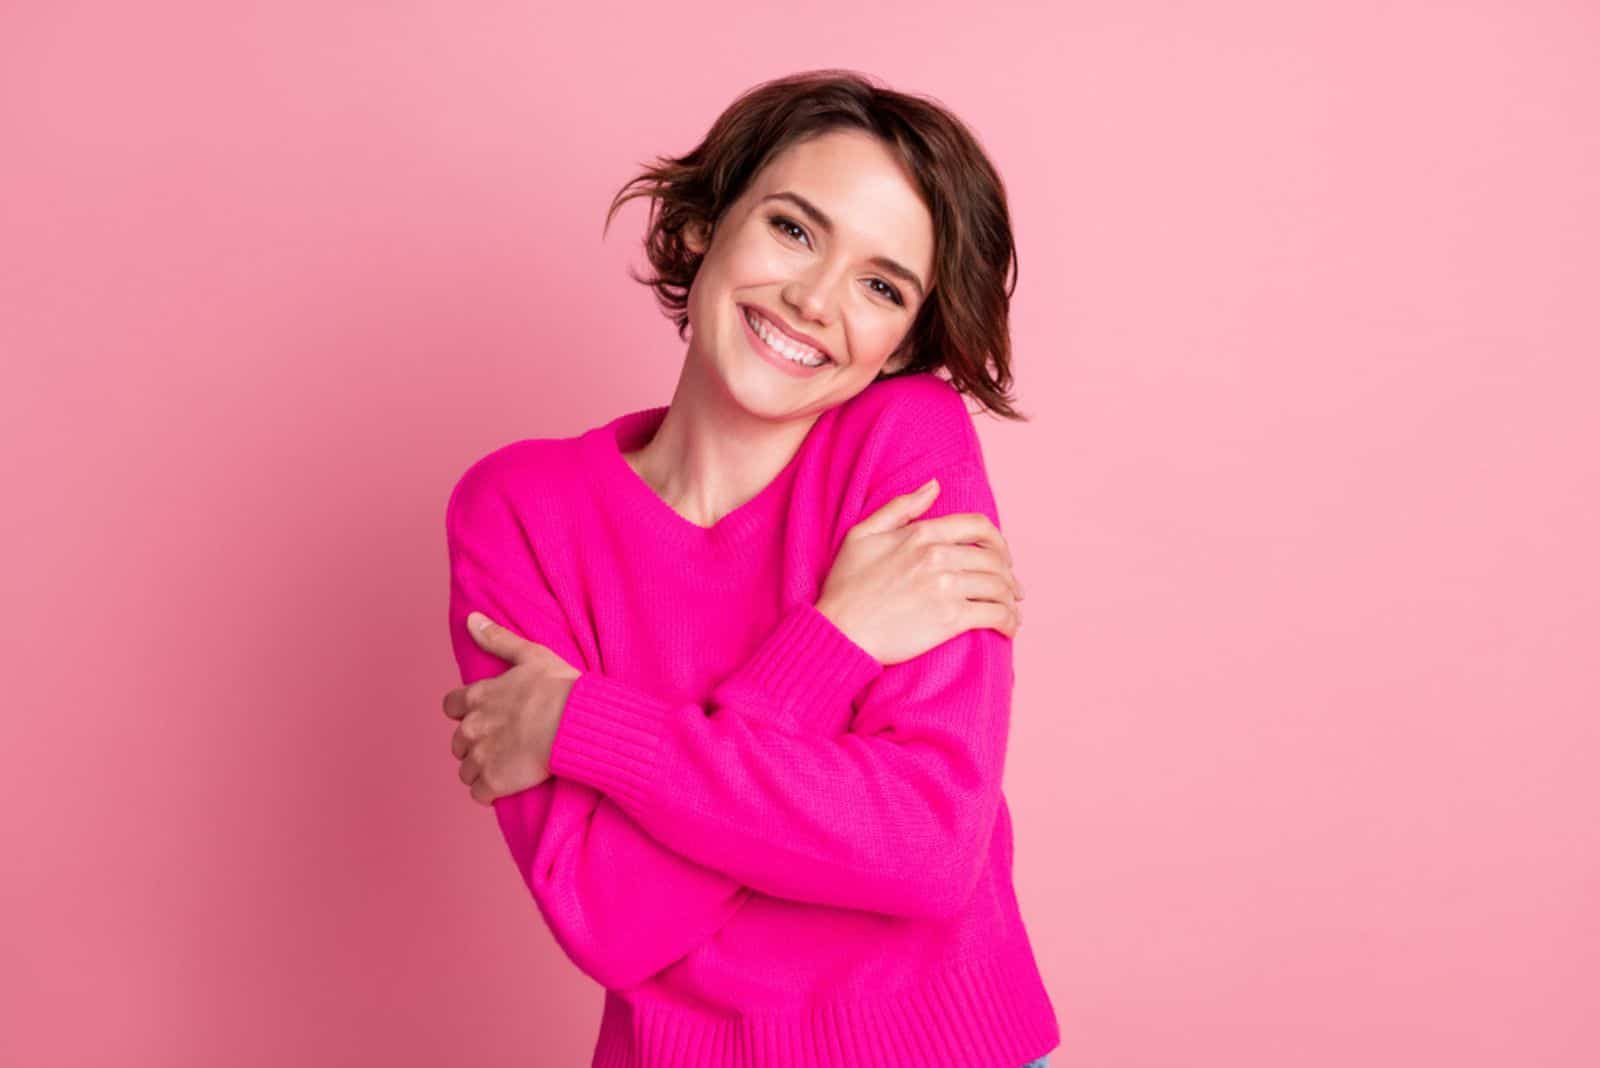 femme souriante portant une chemise rose